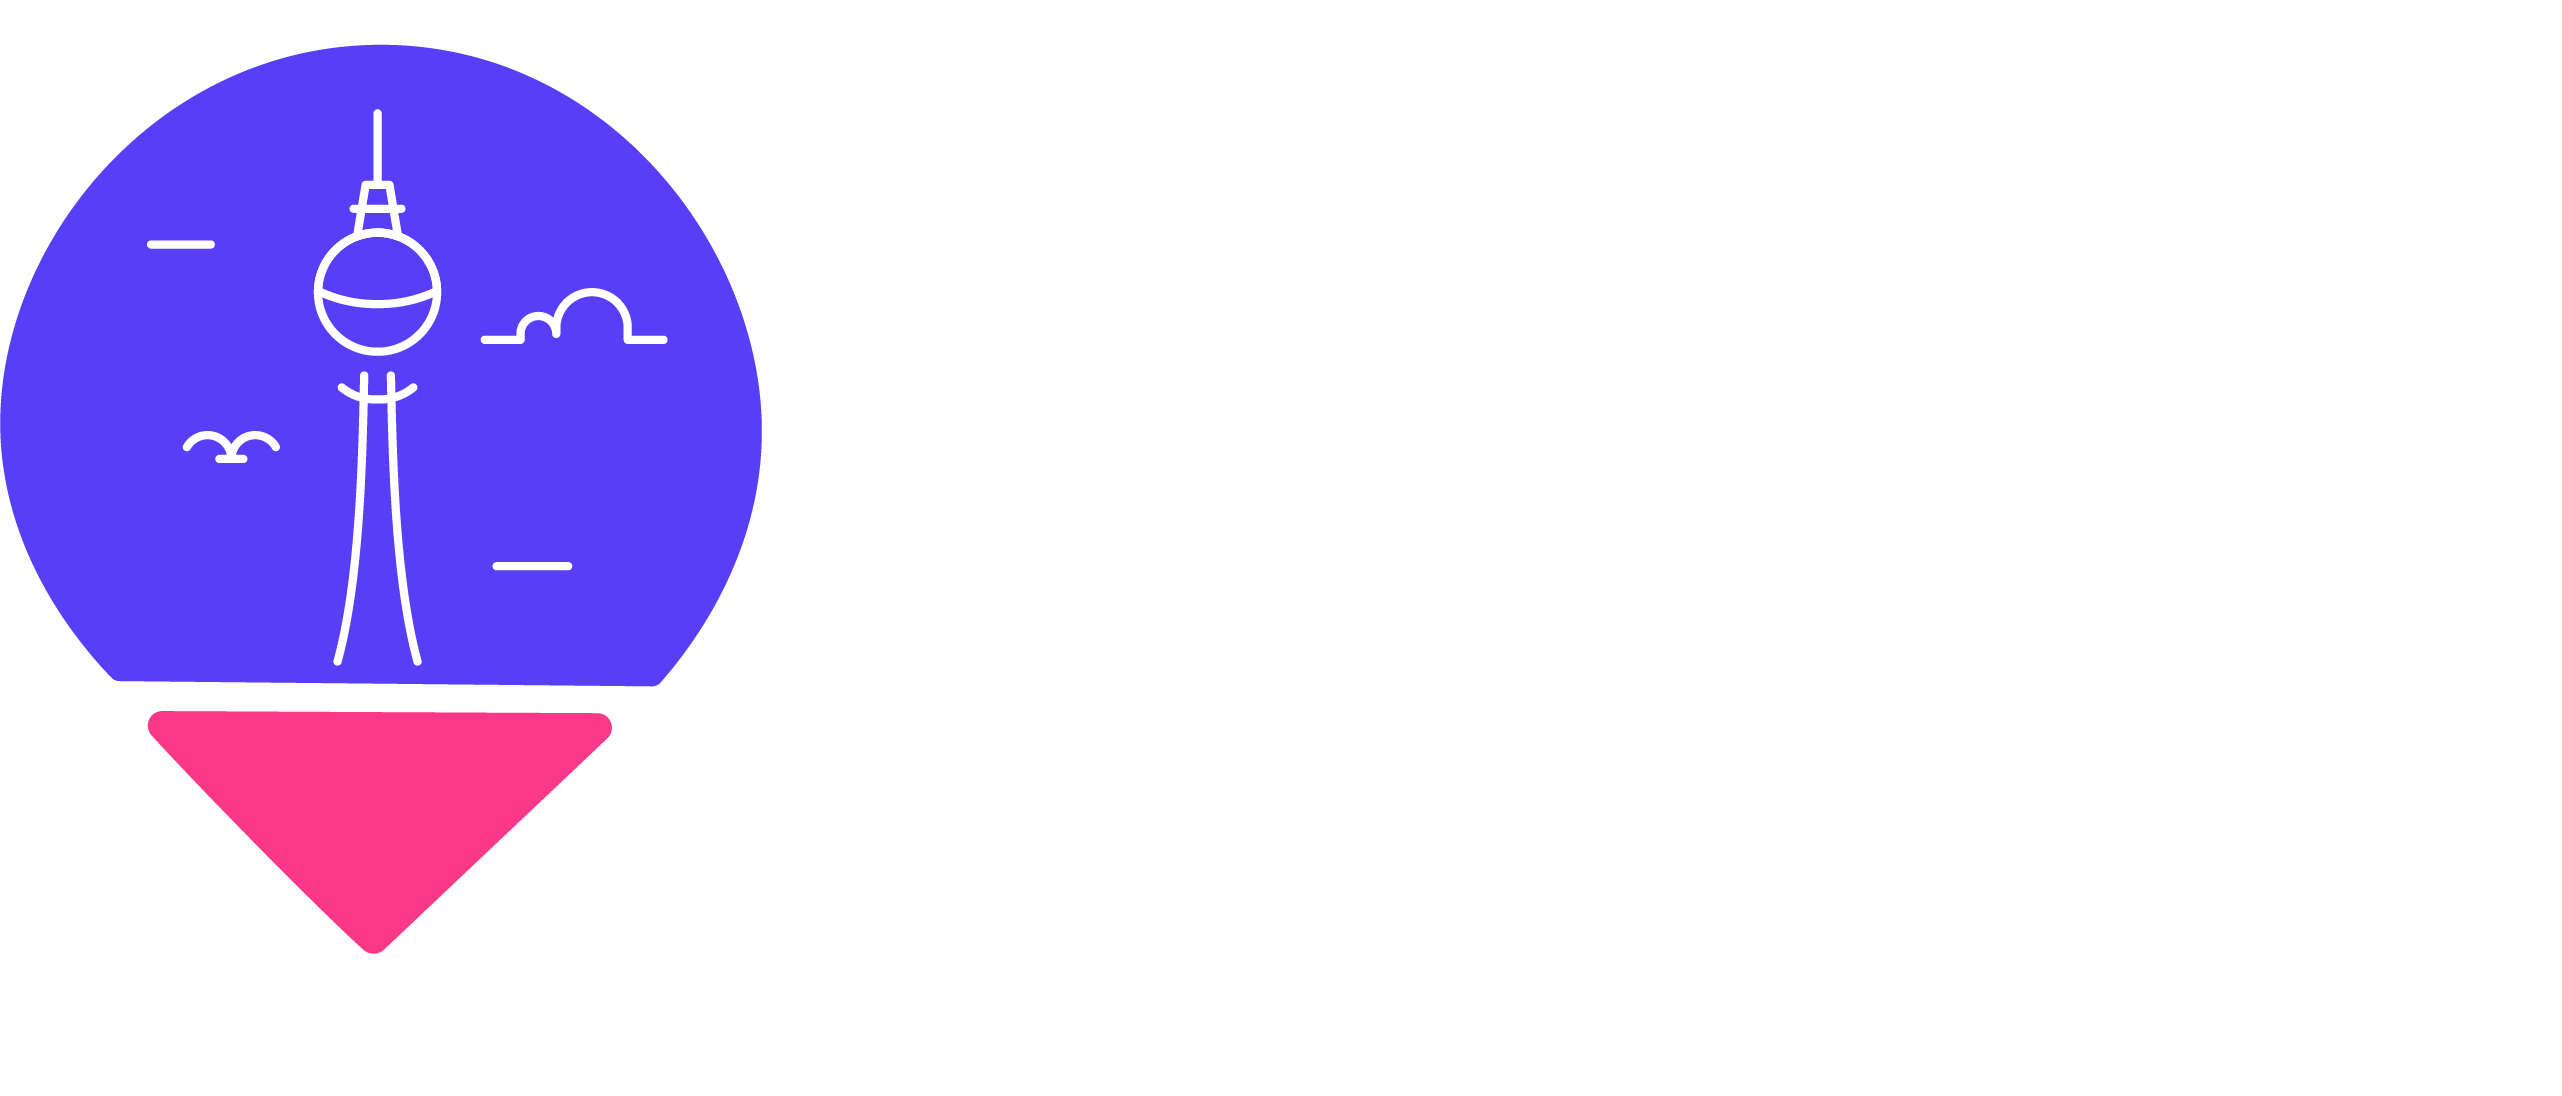 Guide Berlino Logo con scrittura